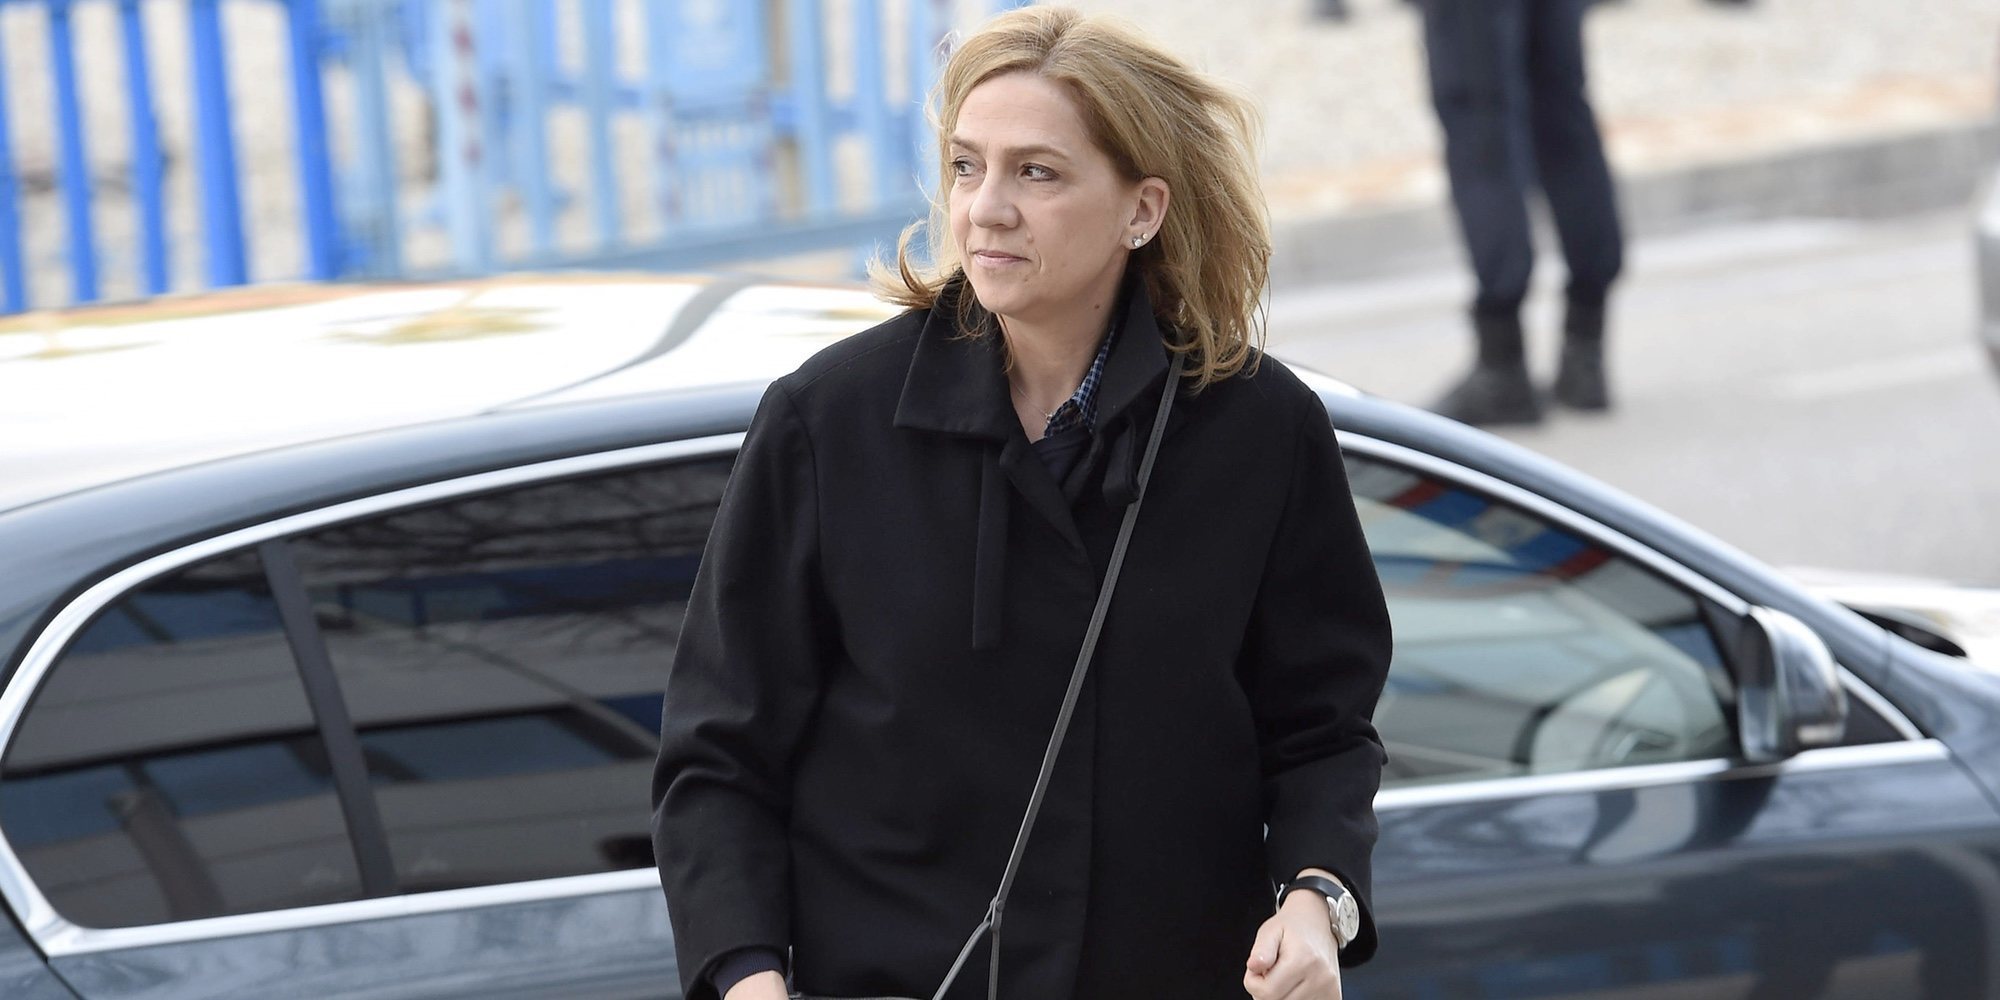 La Infanta Cristina celebra la única gran noticia entre tantos disgustos por las ausencias familiares